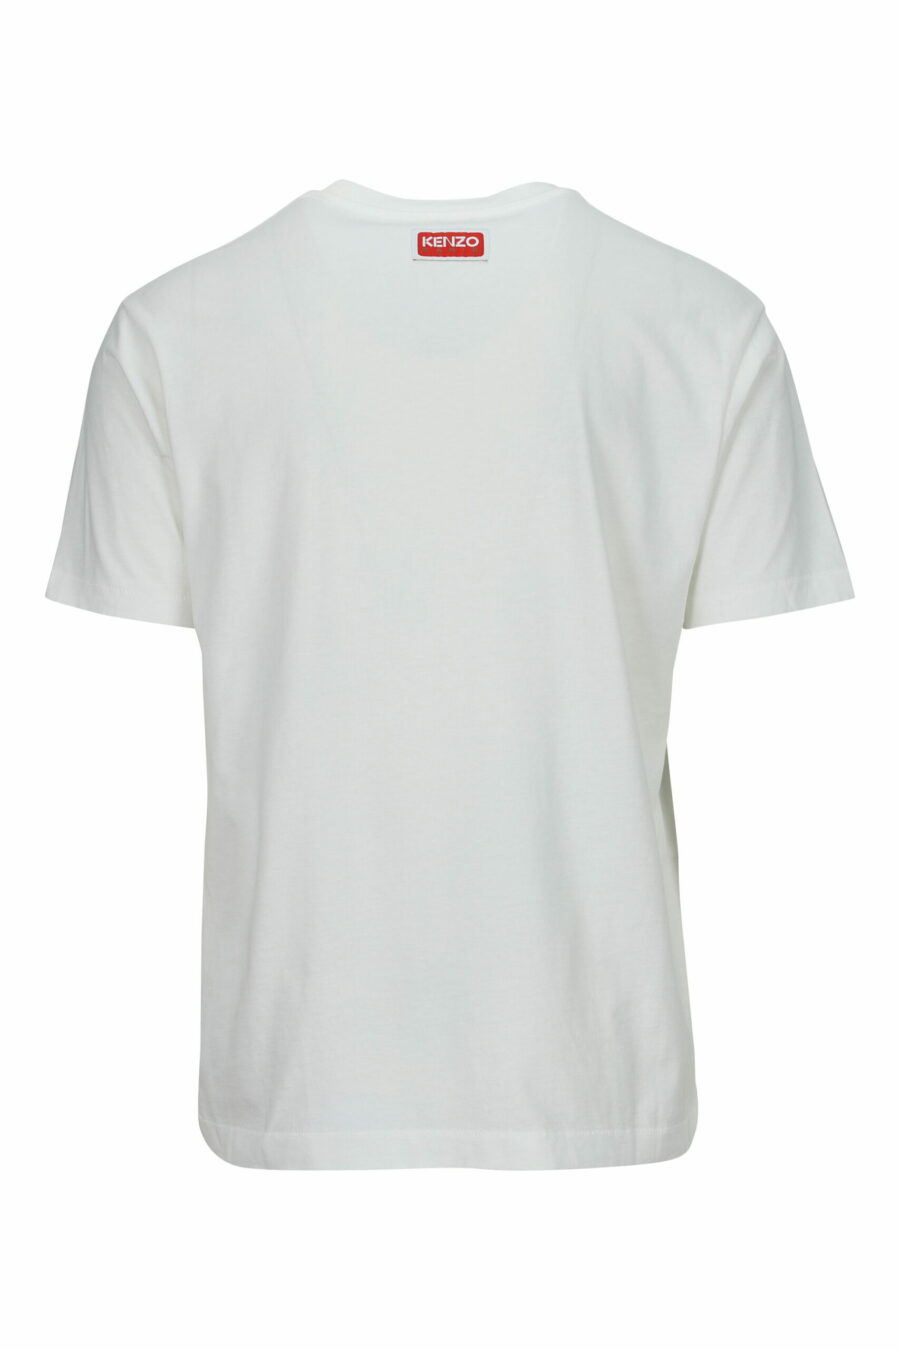 T-shirt blanc surdimensionné avec logo en relief en forme de tigre - 3612230568013 1 scaled